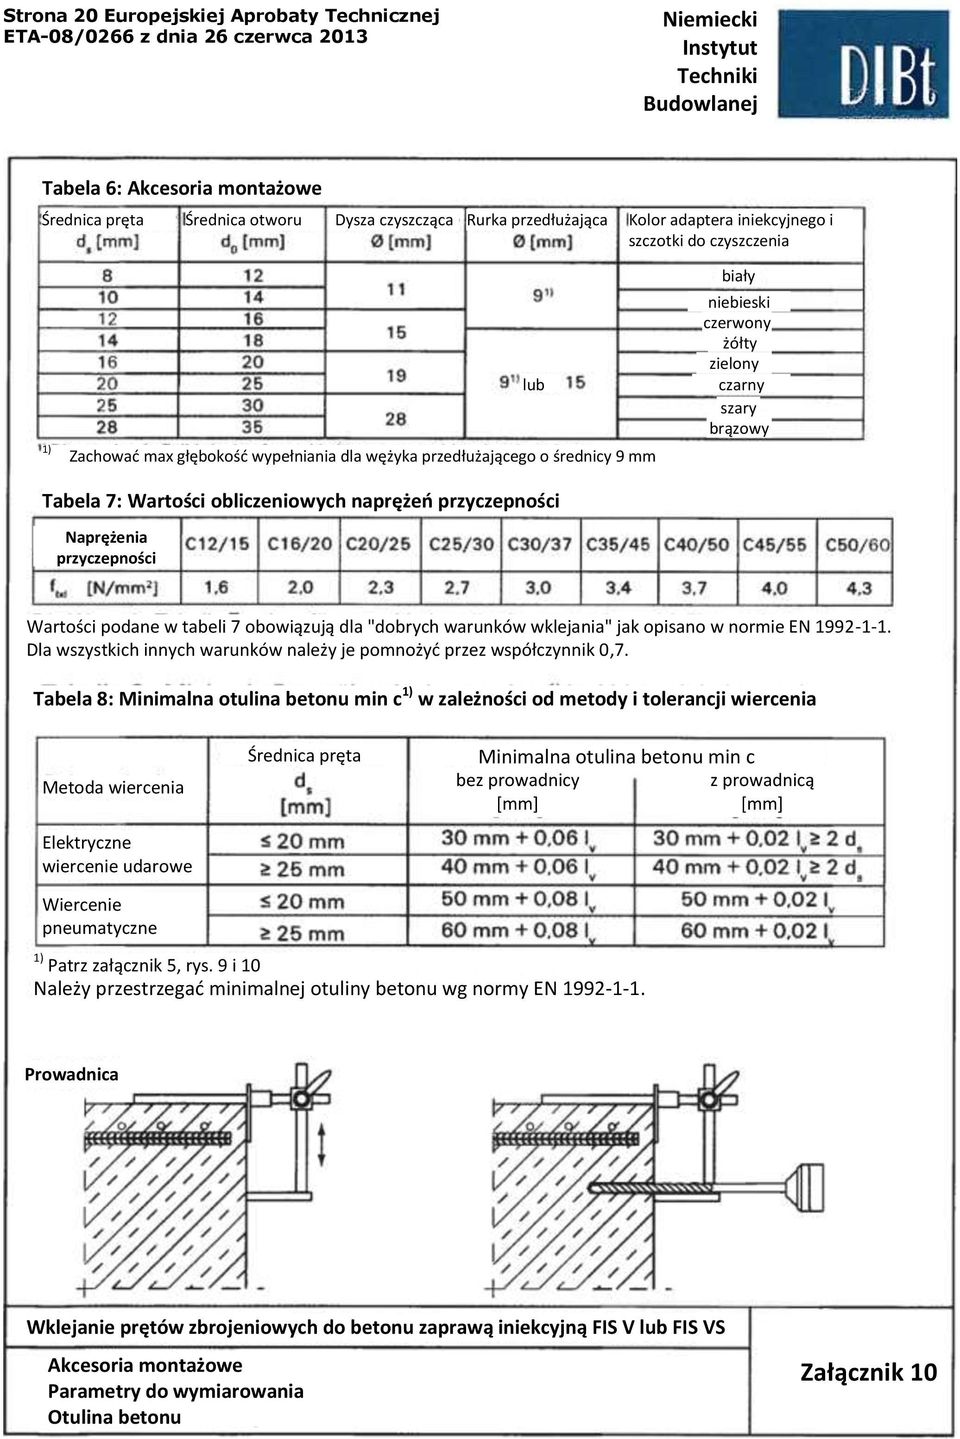 Naprężenia przyczepności Wartości podane w tabeli 7 obowiązują dla "dobrych warunków wklejania" jak opisano w normie EN 1992-1-1.